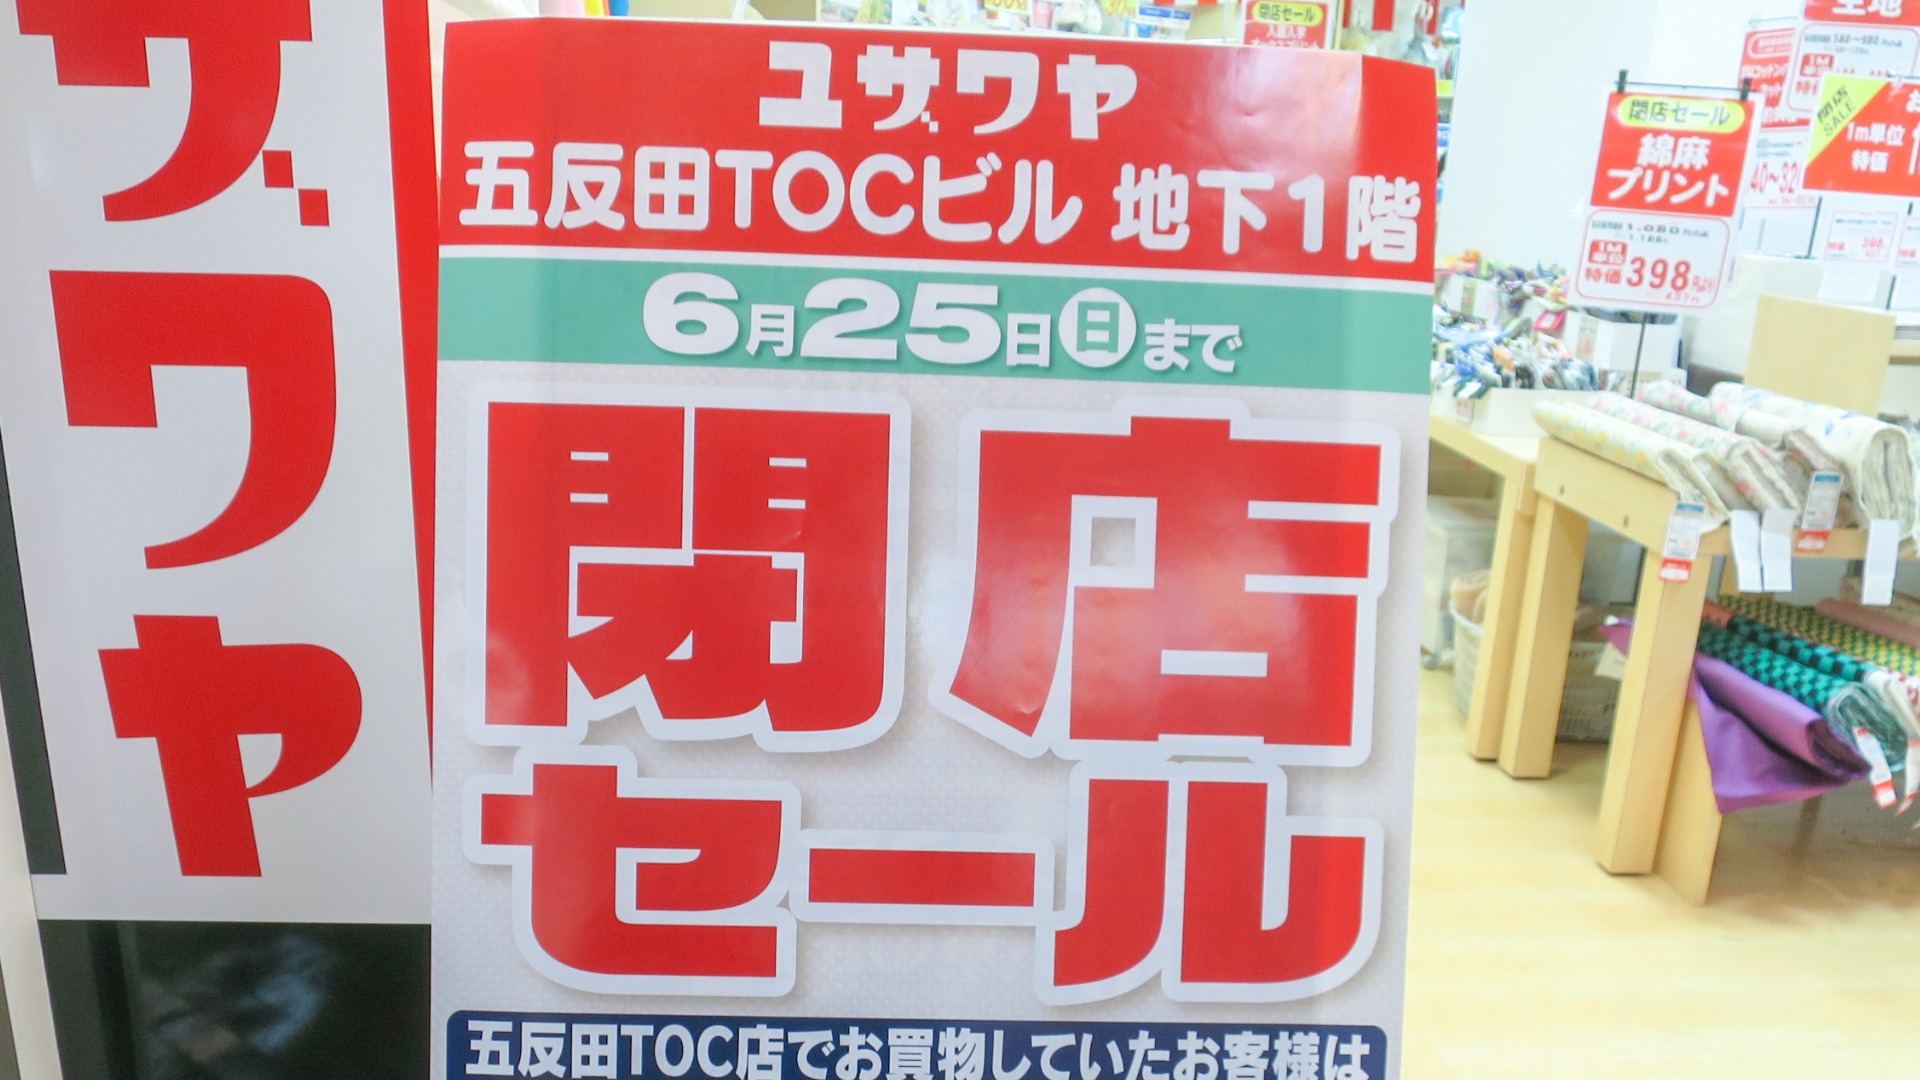 品川区】ショック。五反田TOCのユザワヤが6月25日で完全閉店。閉店在庫